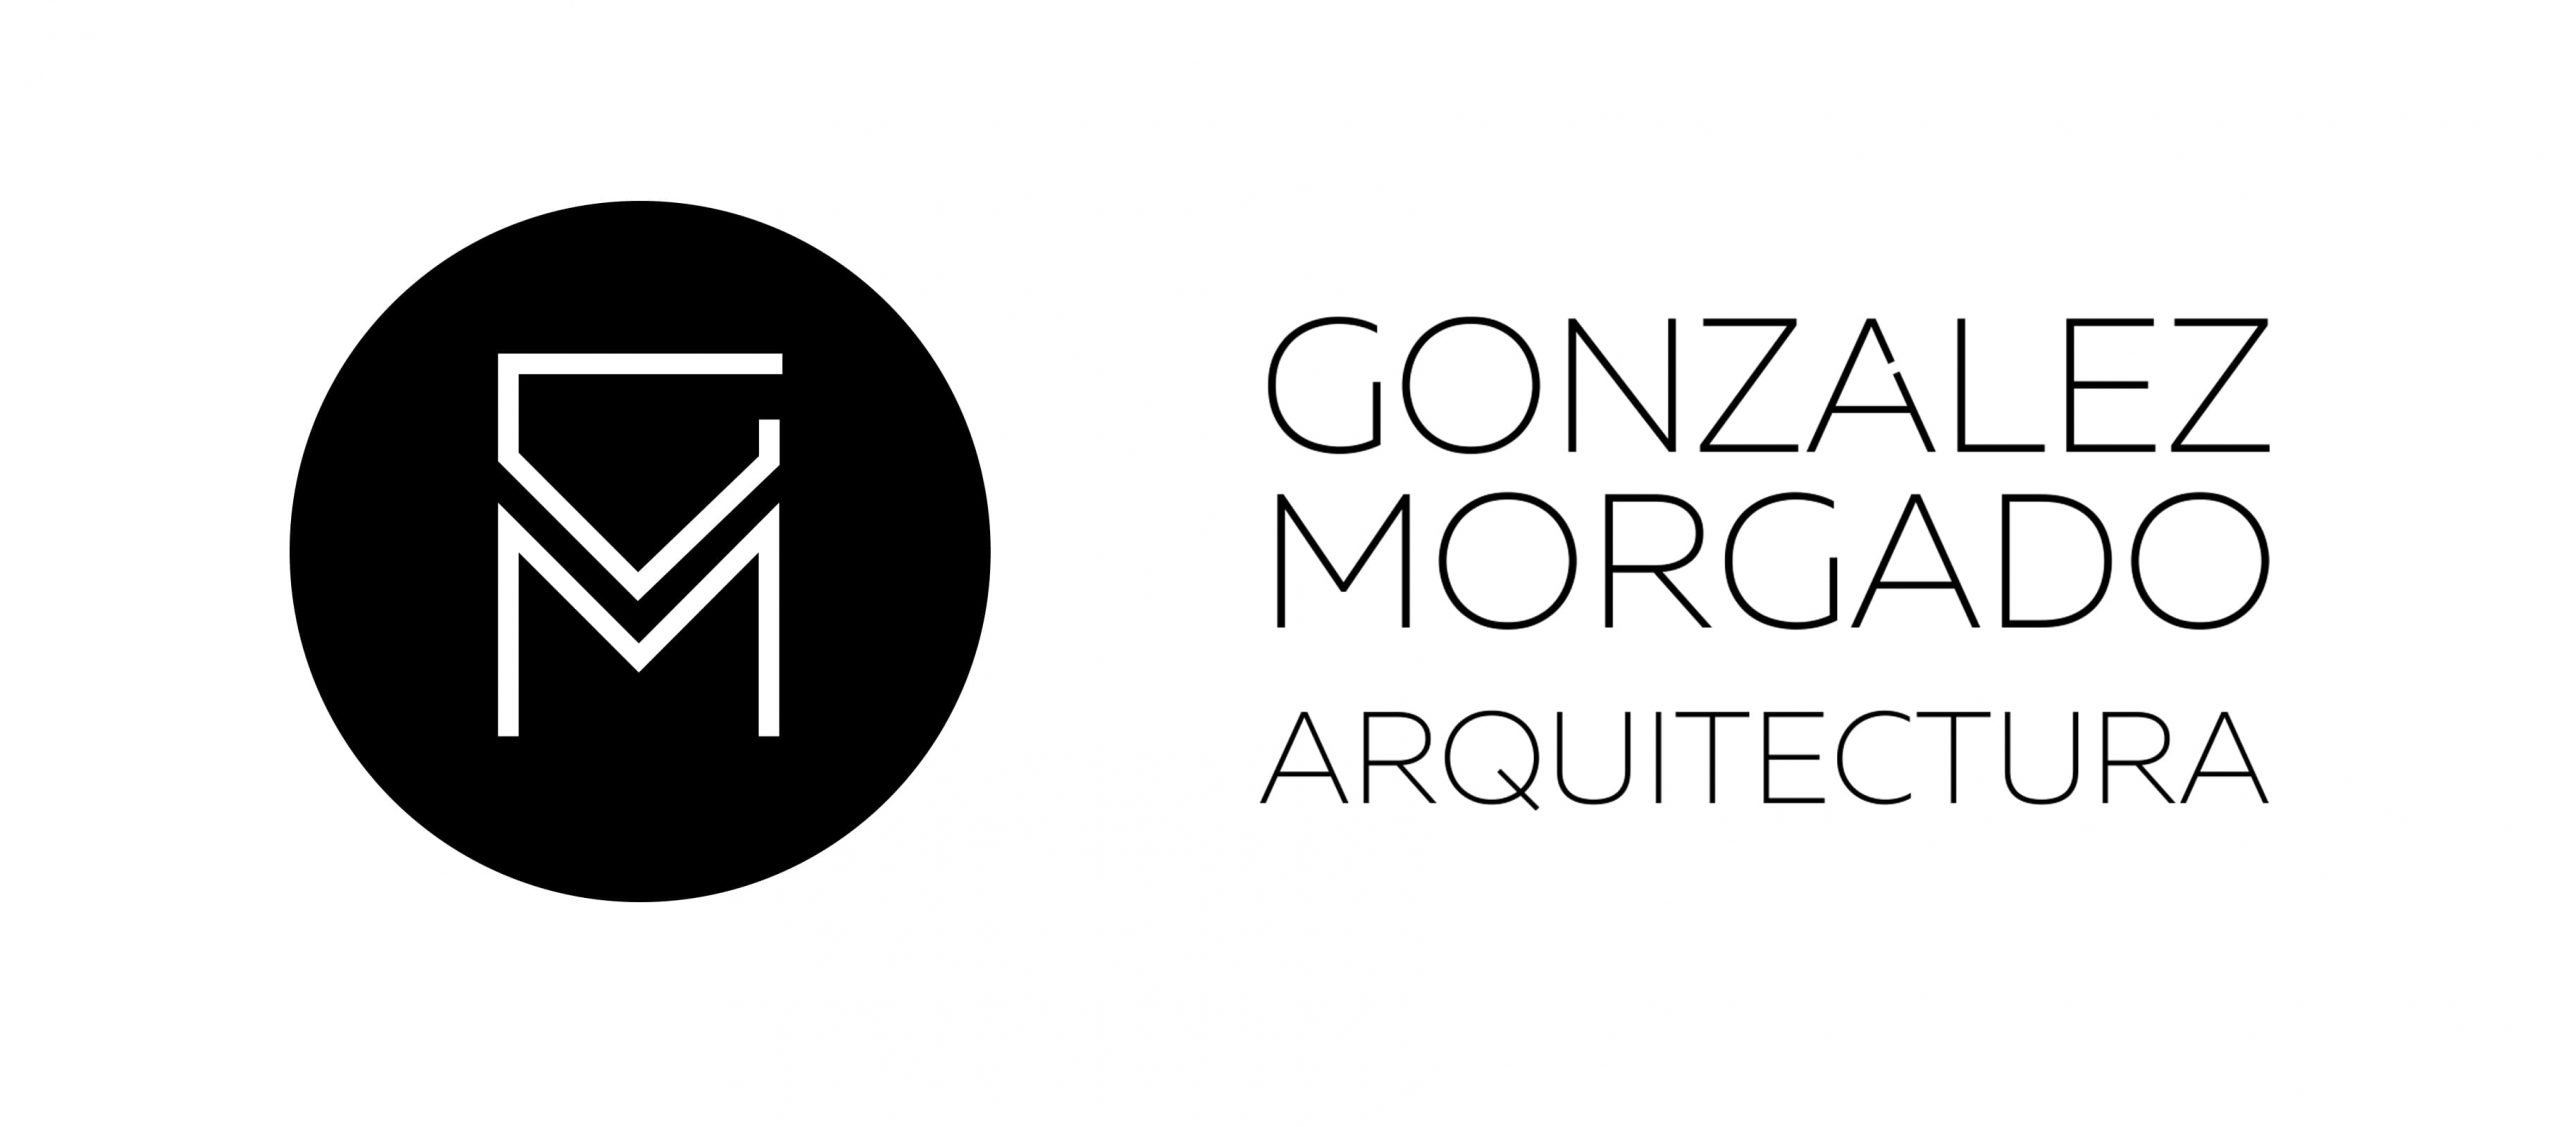 Gonzalez Morgado Arquitectura